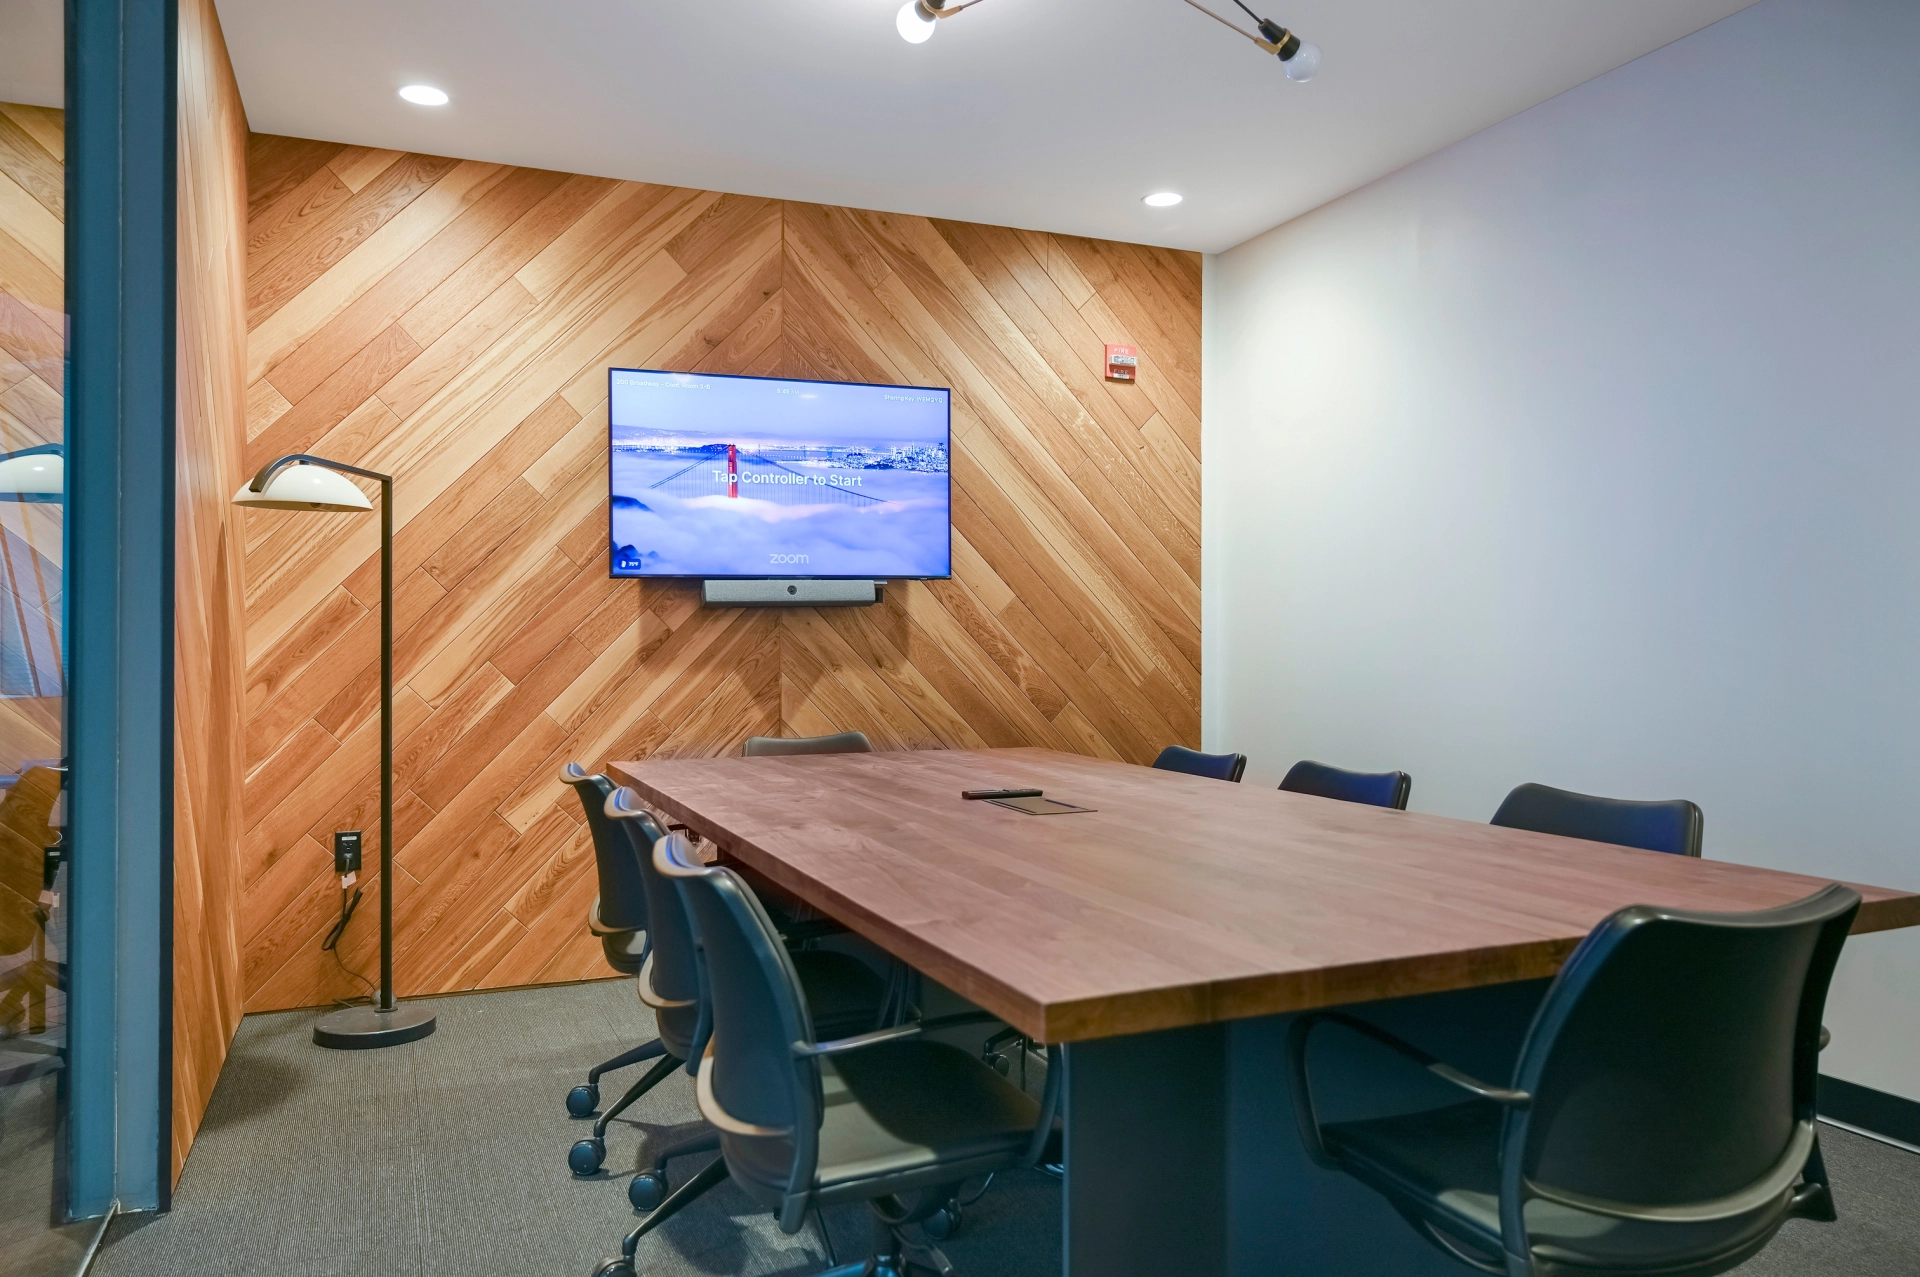 Une salle de réunion de coworking avec des murs en bois et une télévision.